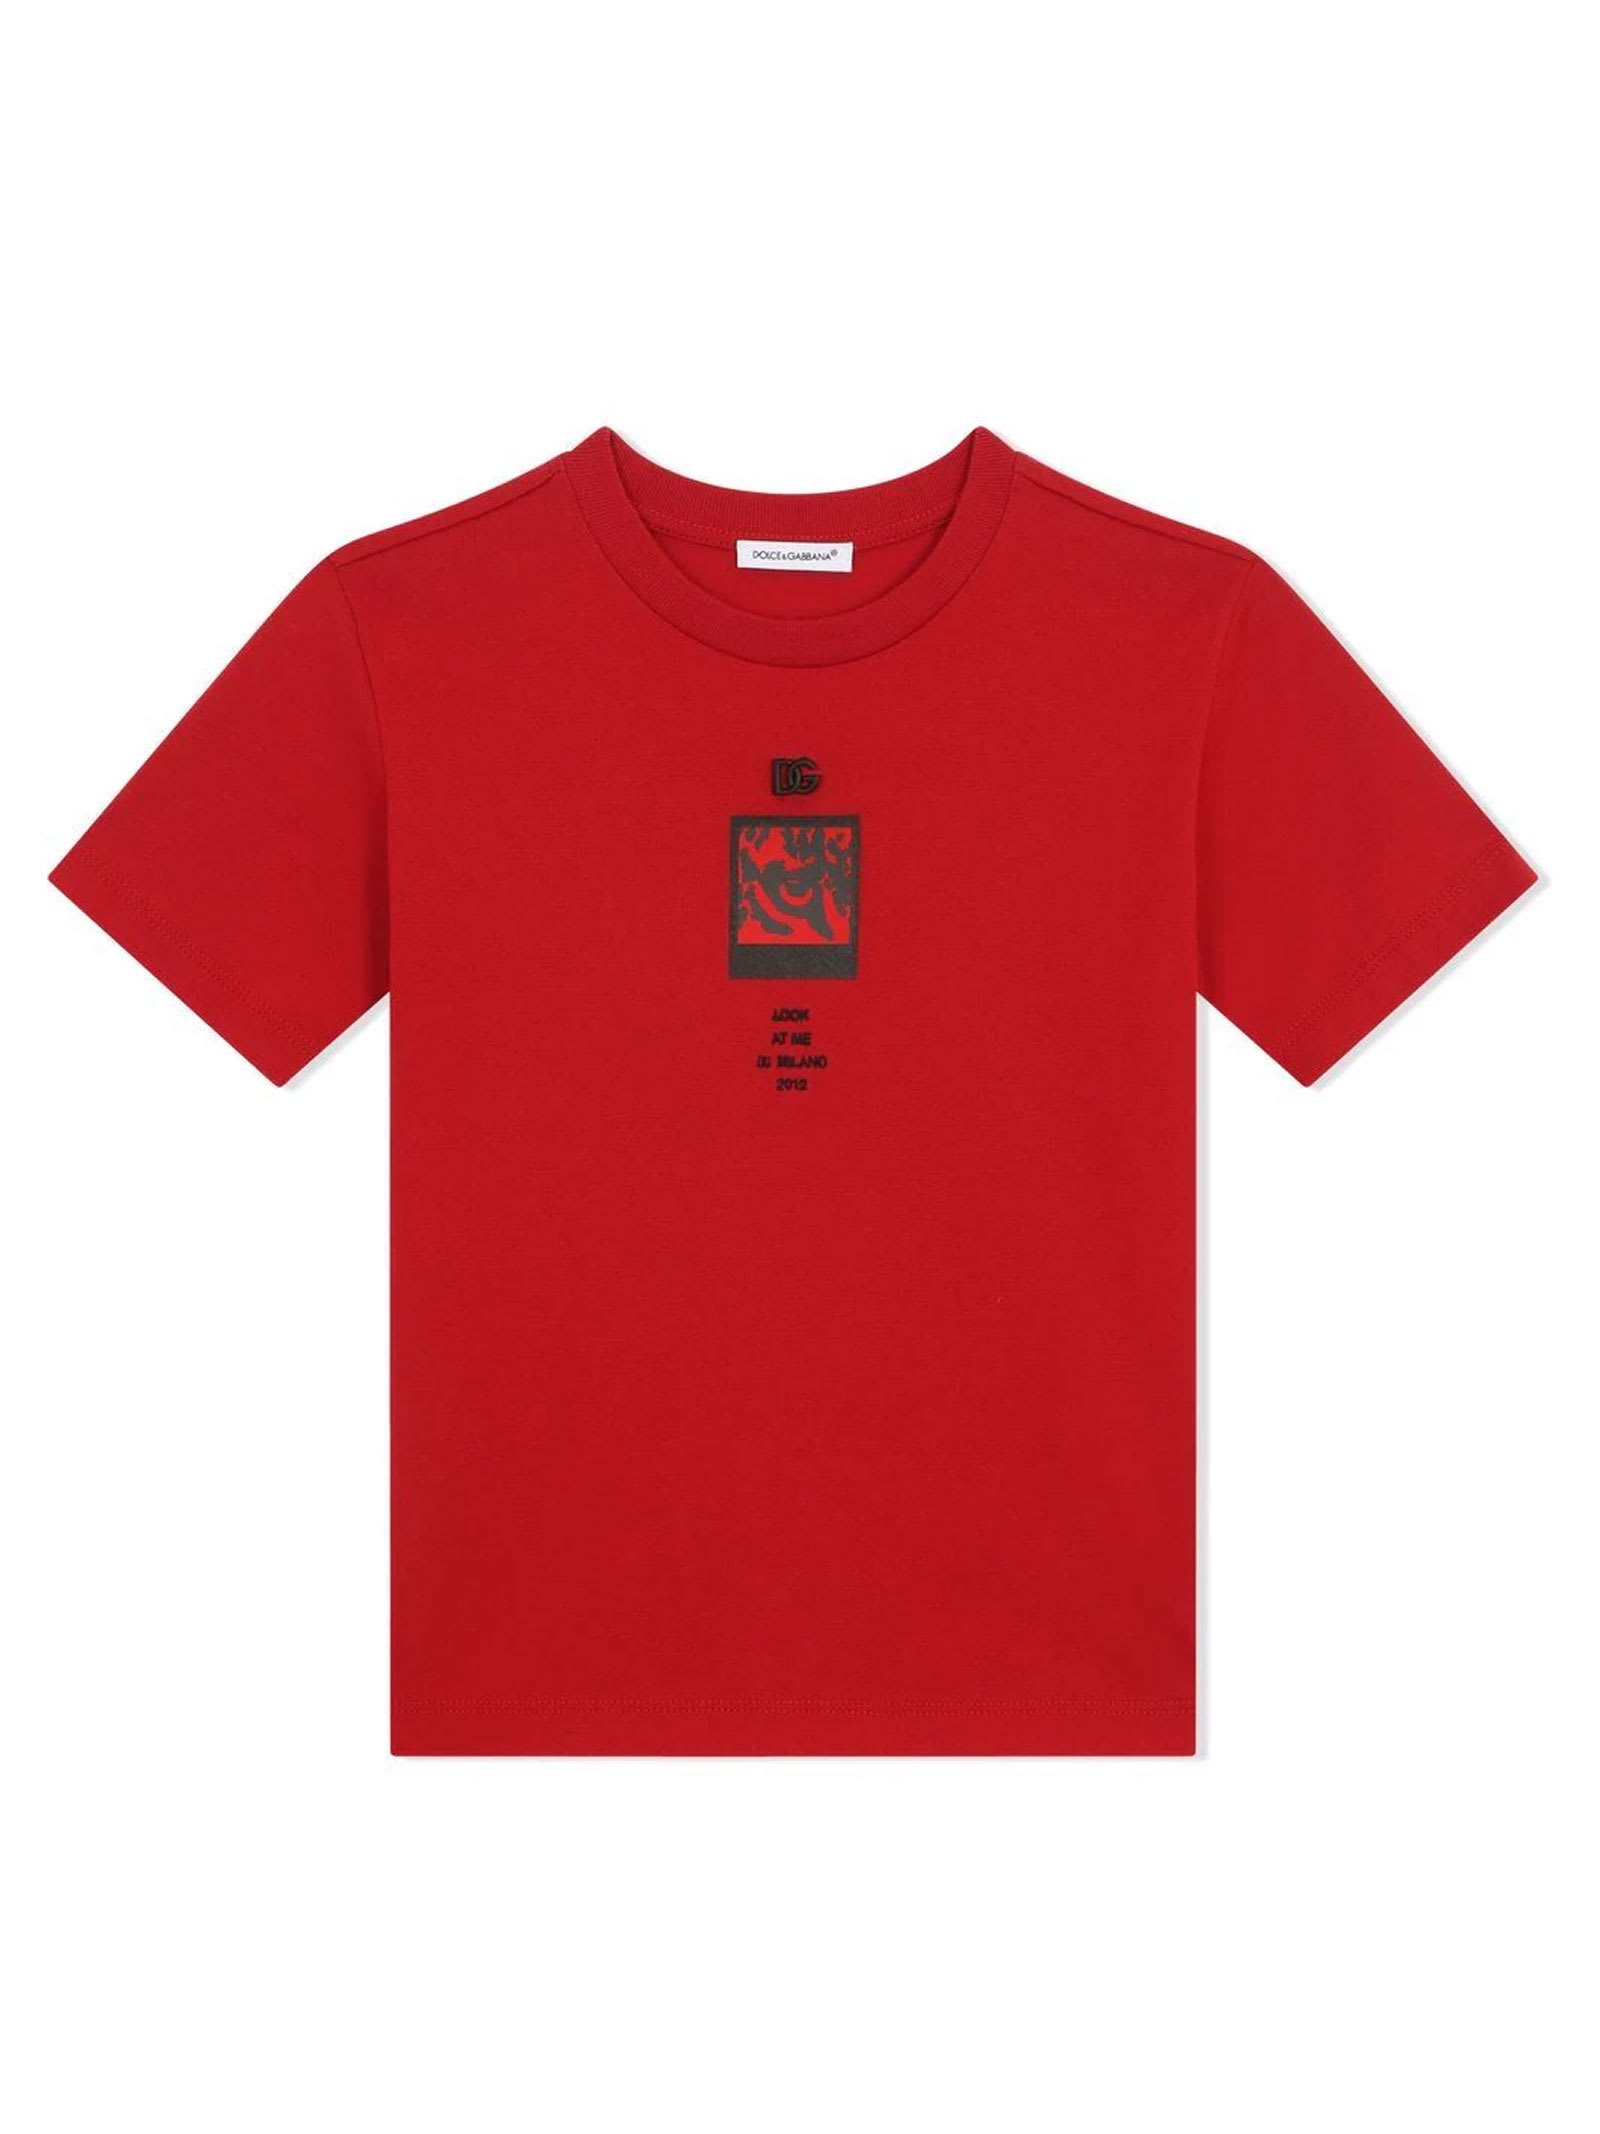 Dolce & Gabbana Red T-shirt With Print Dolce & gabbana Kids